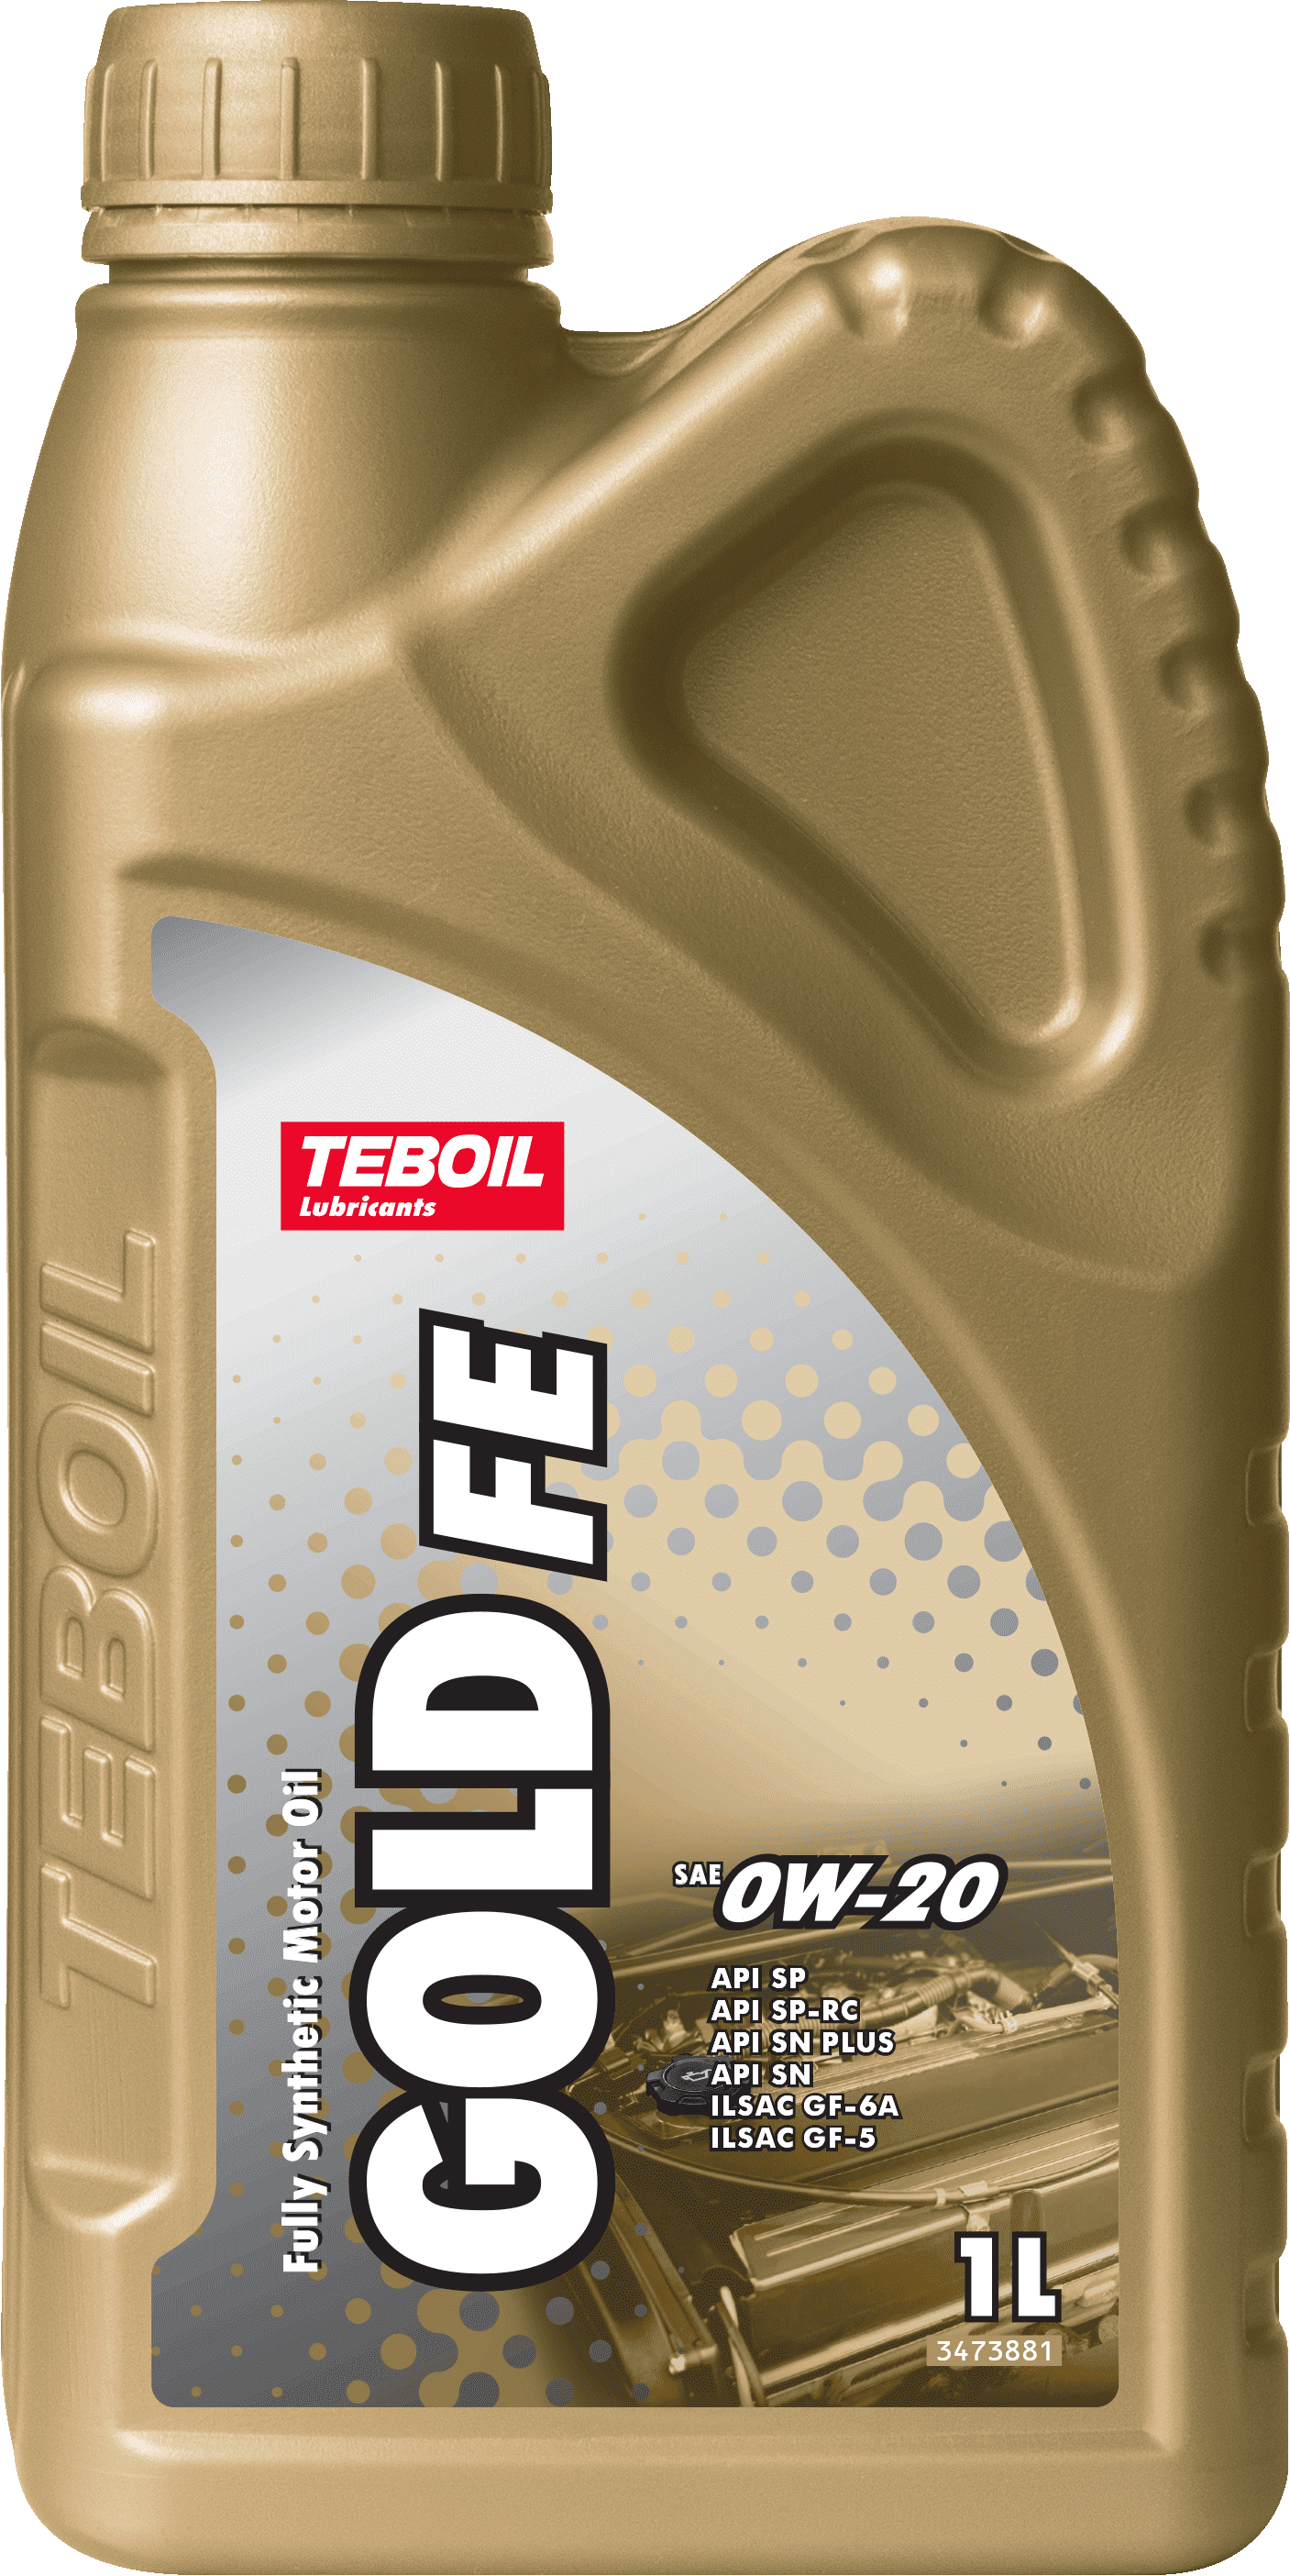 Синтетическое моторное масло TEBOIL GOLD FE 0W-20